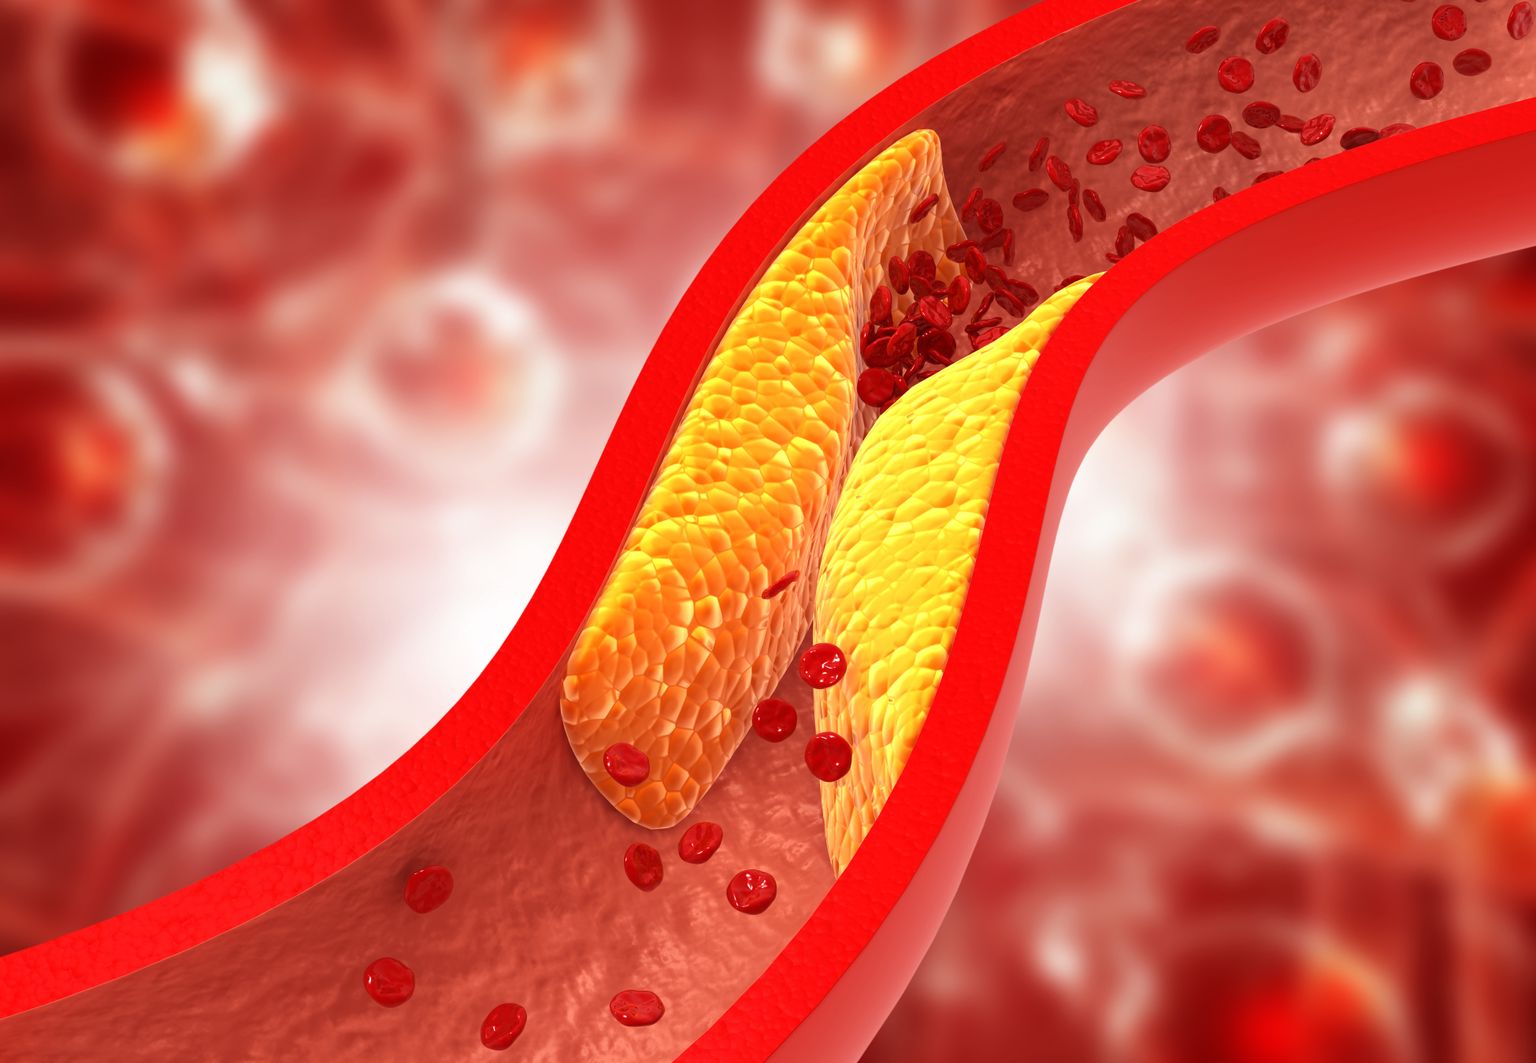 Высокий уровень LDL- или «плохого» холестерина является одним из основных факторов риска инфаркта миокарда и инсульта.